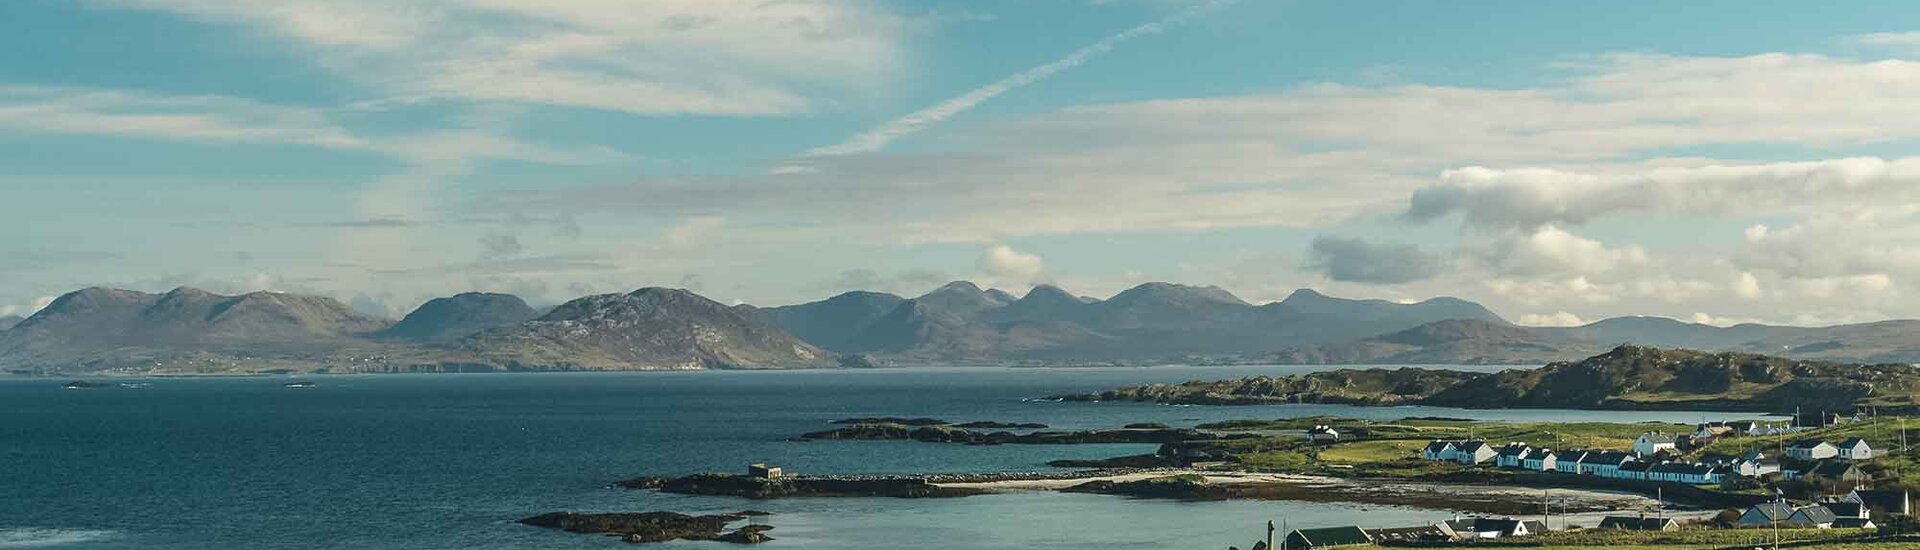 Blick auf die Insel Inishbofin 